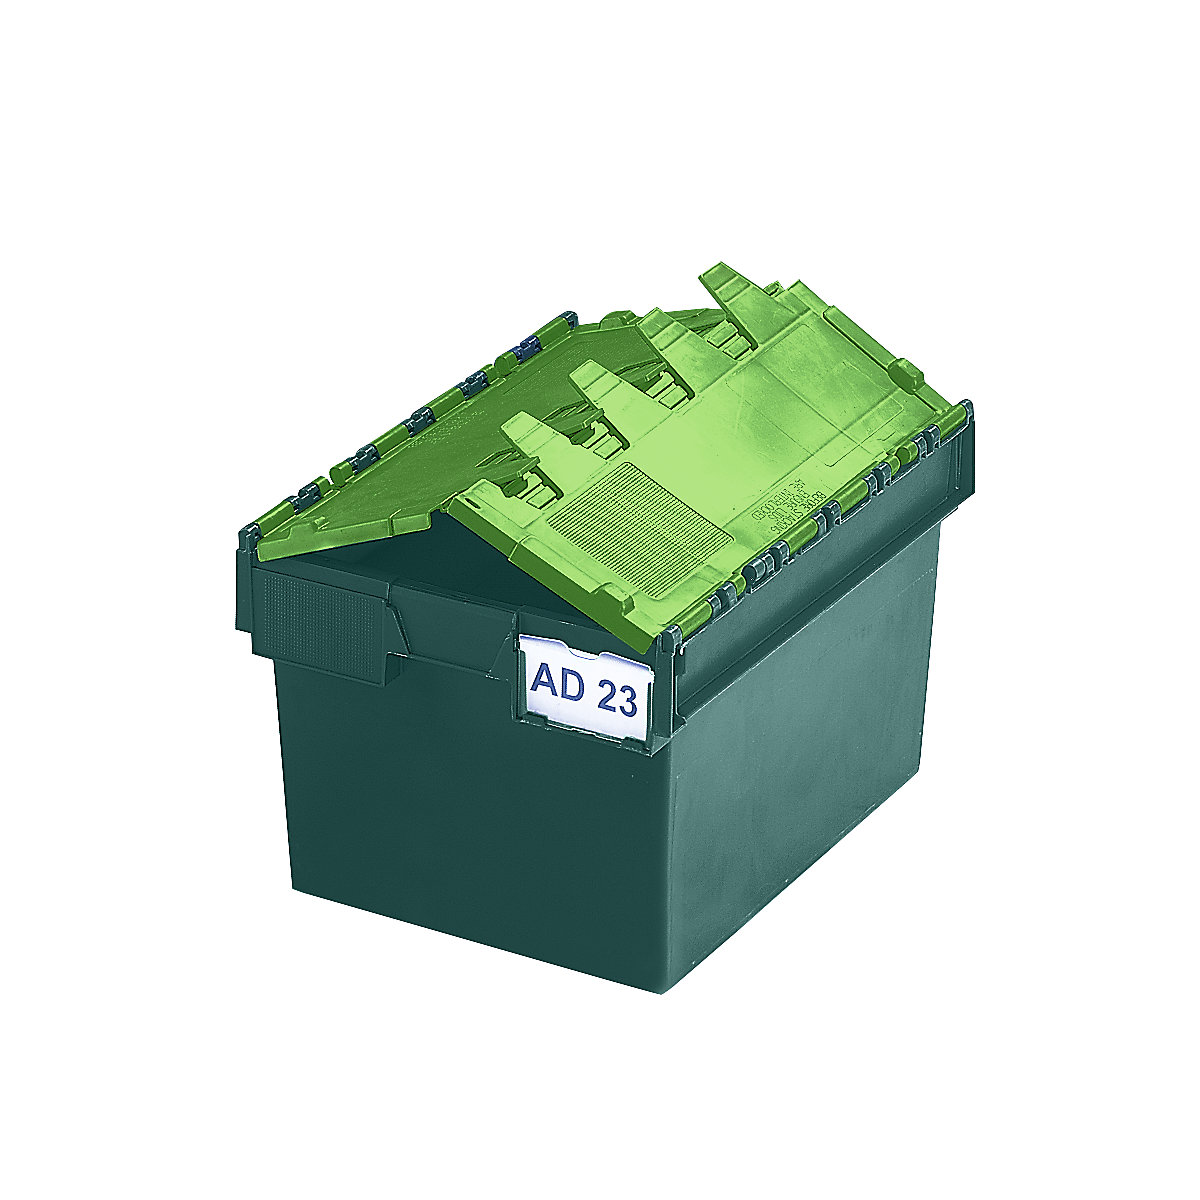 Pojemnik wielokrotnego użytku do ustawiania w stos ze składaną pokrywą, poj. 54 l, dł. x szer. x wys. 600 x 400 x 320 mm, zielony